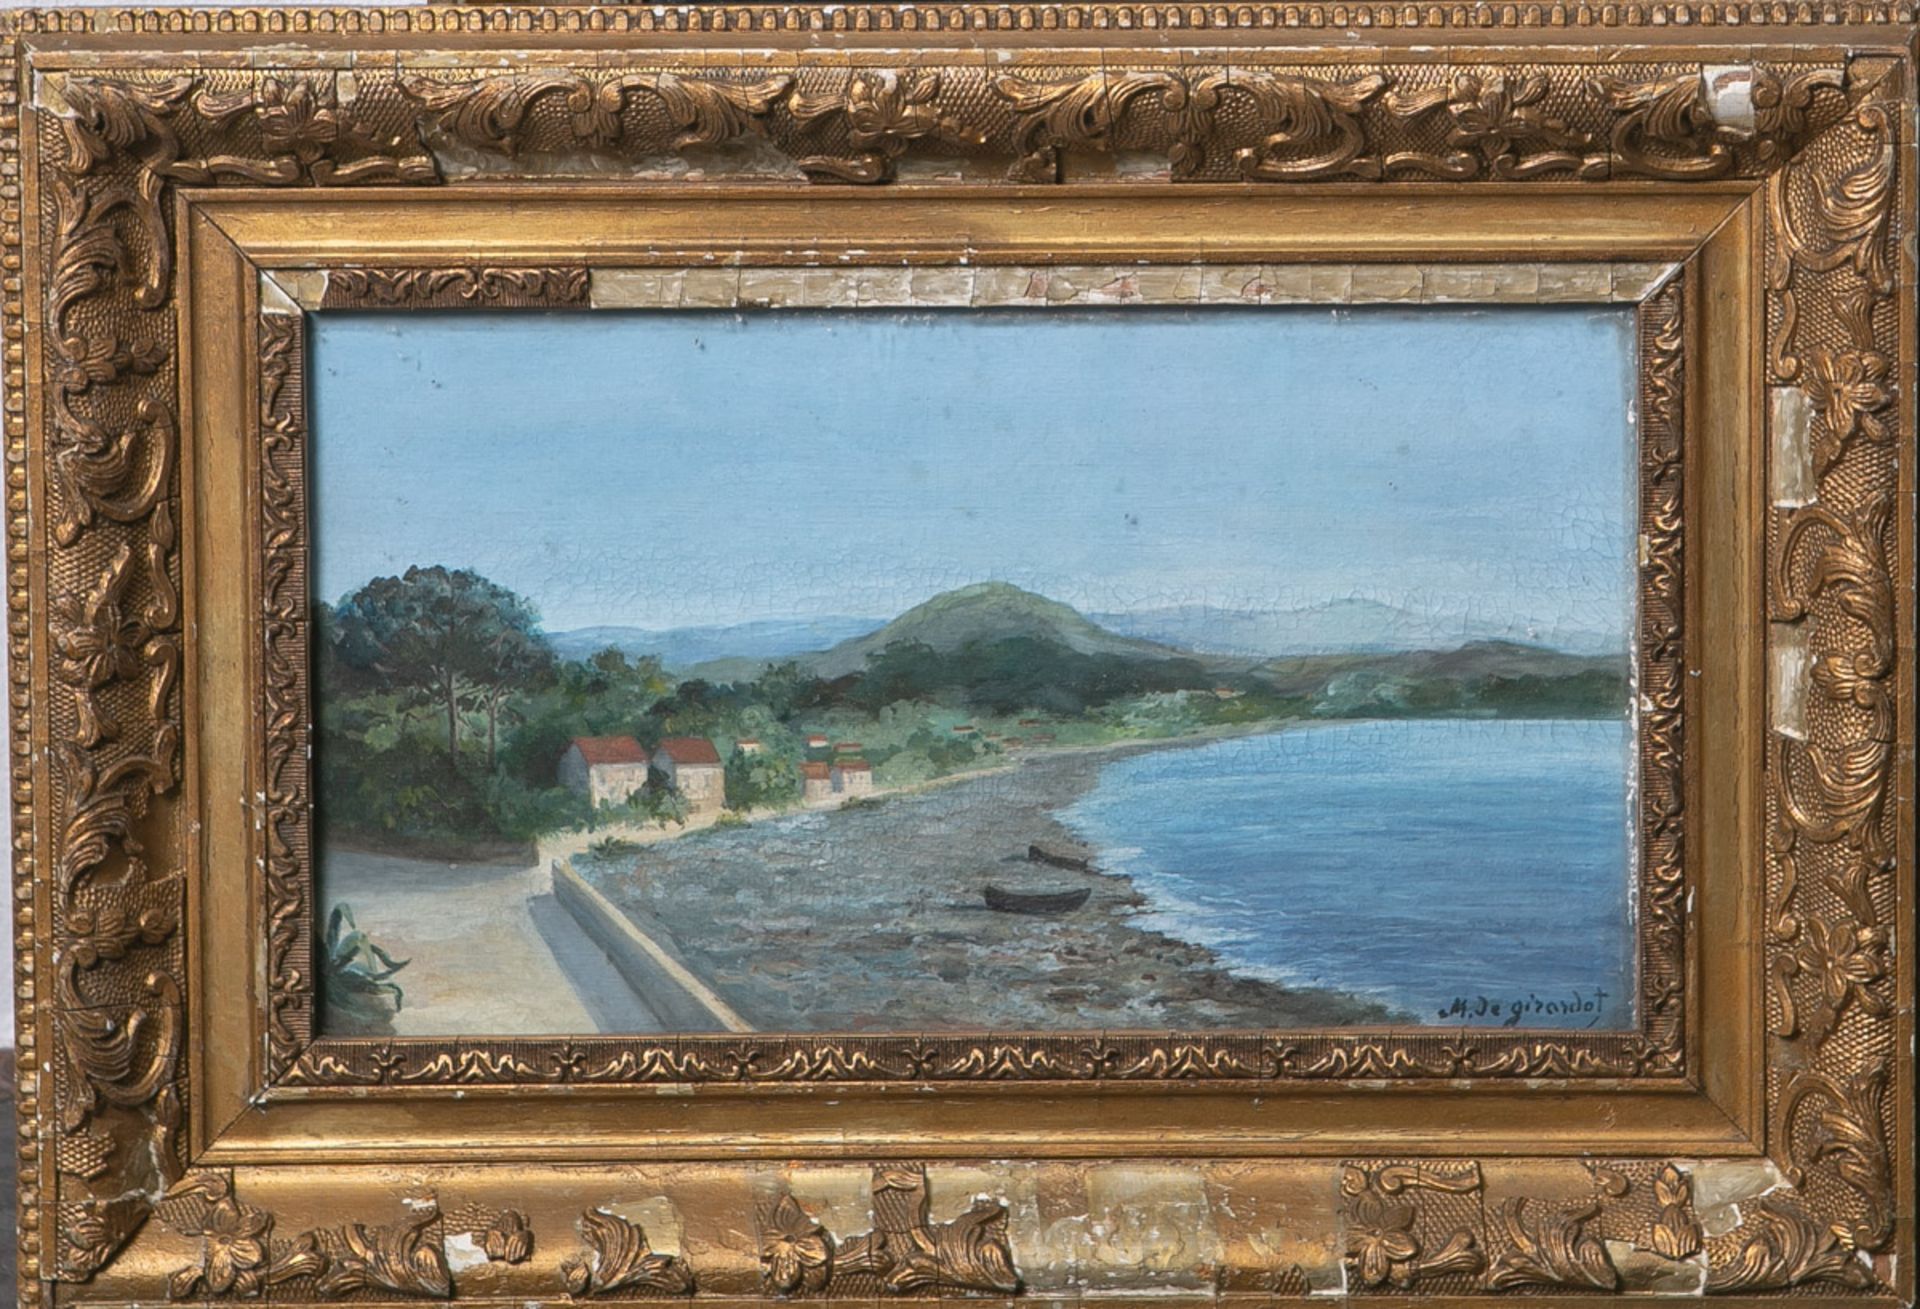 Girardot, M. Je. / wohl Girardot, Georges Marie Julien (1856 - 1914), südische Landschaft